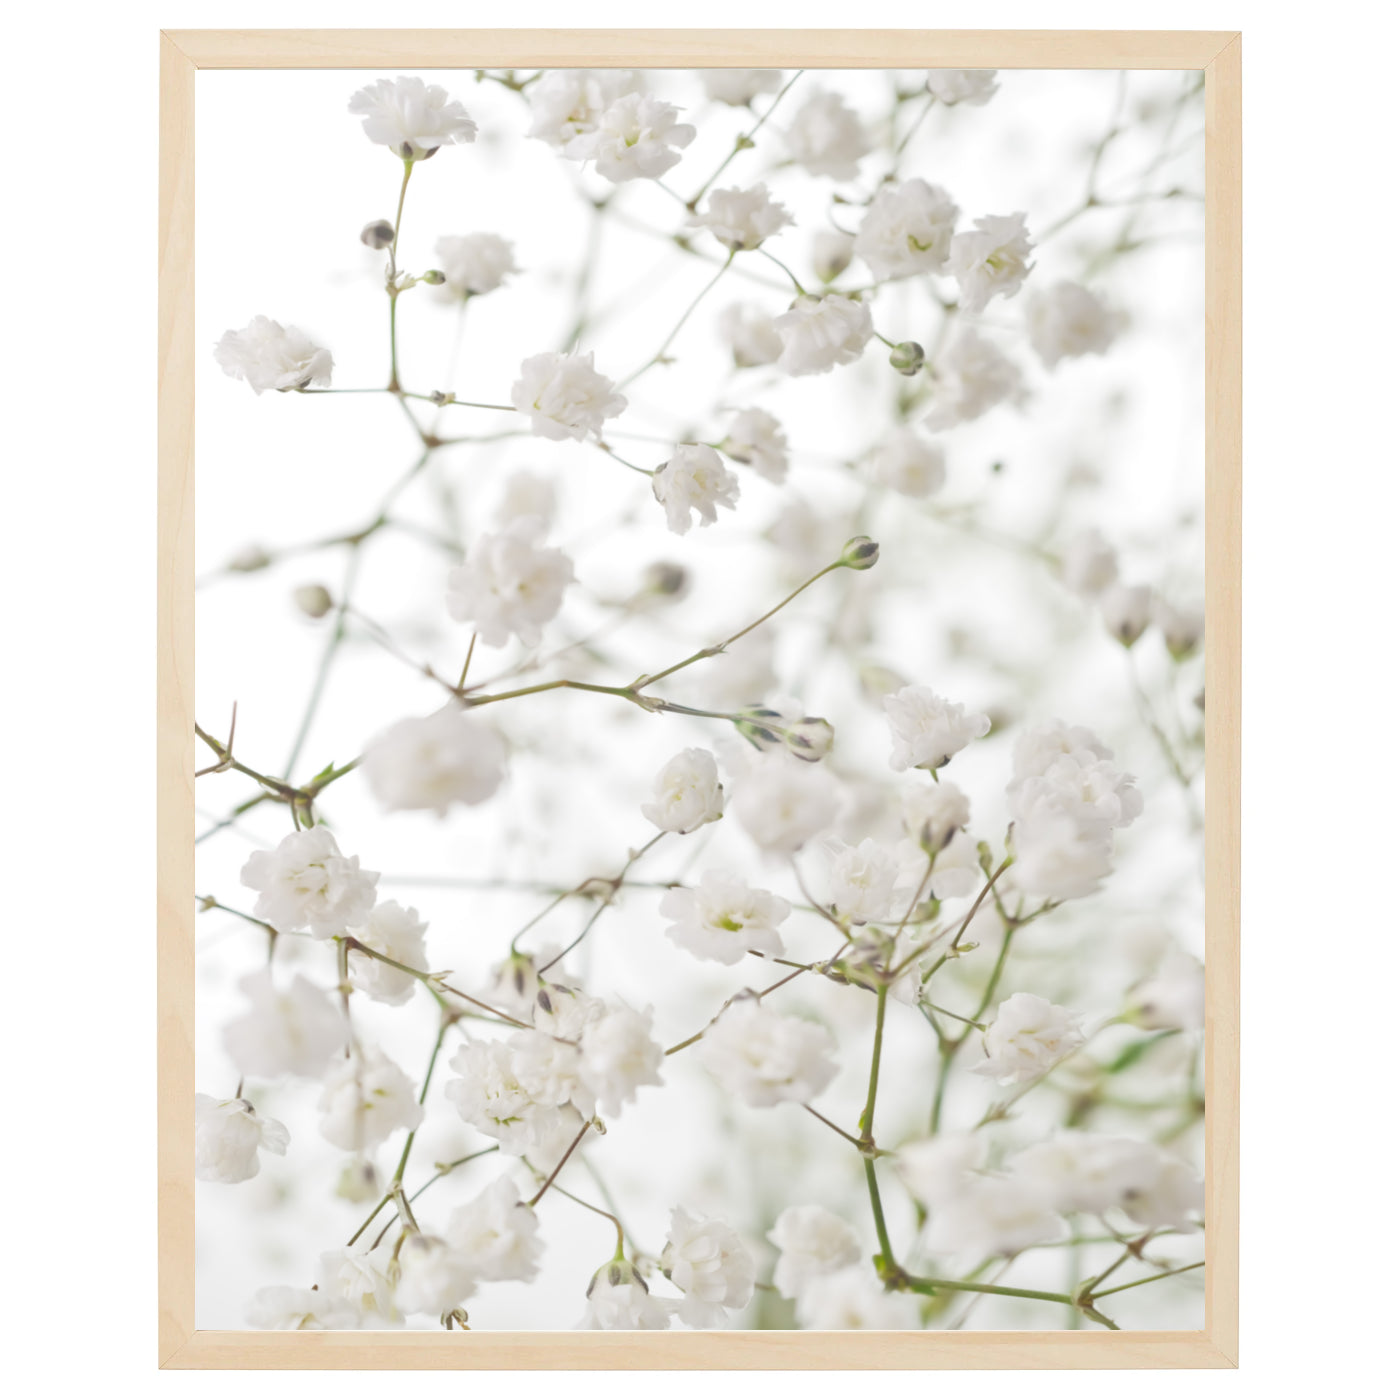 En plakat med hvide gypsophila blomster på en lys baggrund. Blomsterne er små og tæt siddende og skaber et flot skulpturelt element på plakaten. Den lyse baggrund fremhæver blomsternes detaljer og skaber en følelse af lethed og bevægelse.